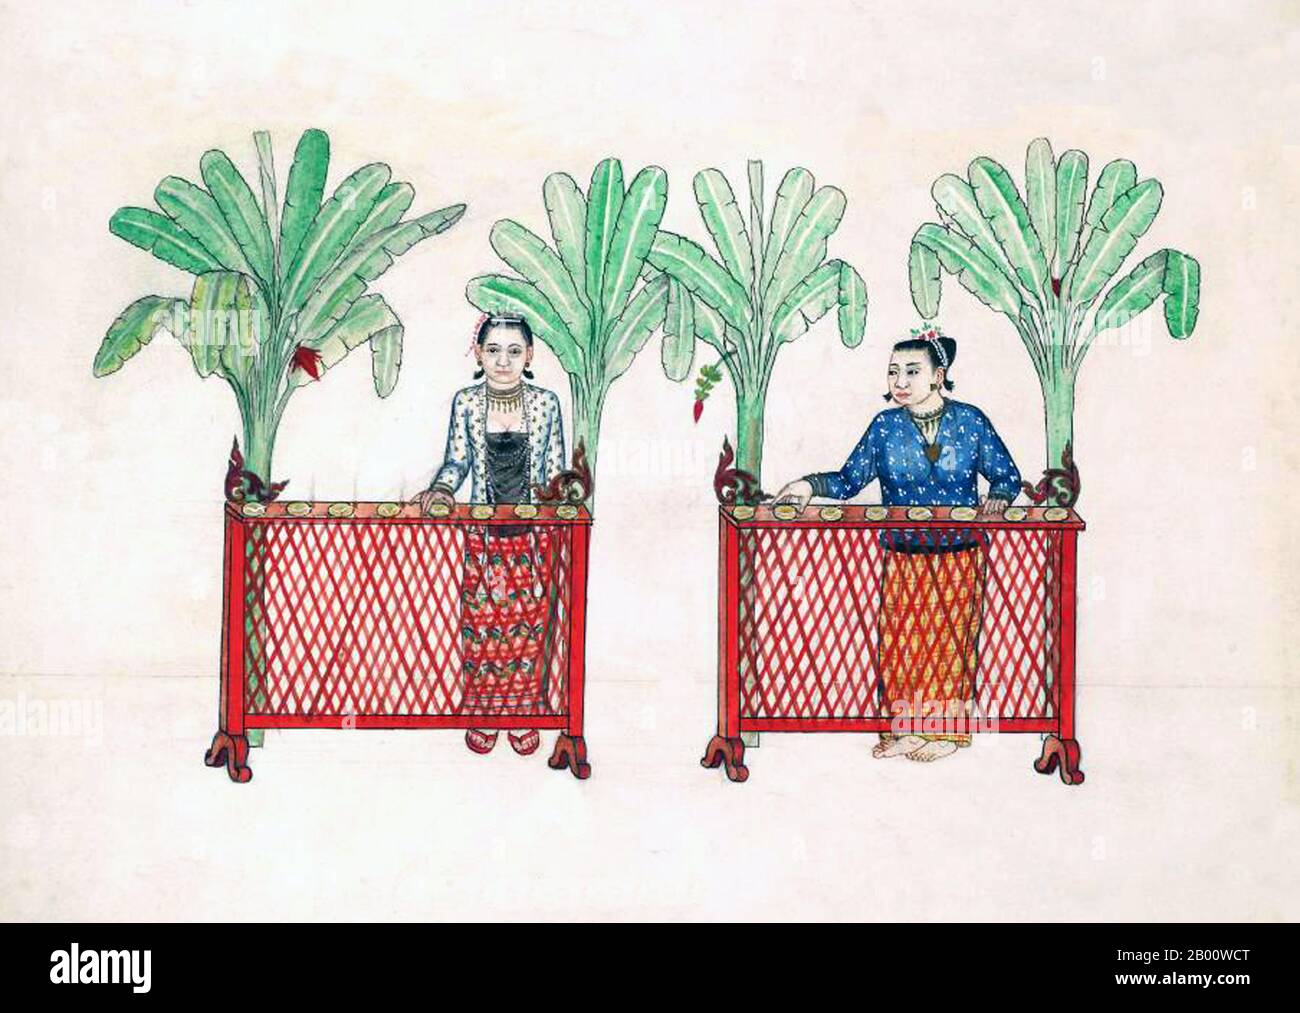 Birmanie/Myanmar: Des femmes qui proposent des collations spéciales pour le festival de la Saint-Sylvestre. Cette peinture, d'un artiste birman inconnu, est tirée d'un album de croquis aquarelle datant d'environ 1897 qui comprend des illustrations de moines bouddhistes, du Bouddha, des monastères, des croyances et des scènes domestiques. La légende attribue la première doctrine bouddhiste en Birmanie à 228 BCE lorsque Sohn Uttar Sthavira, un des moines royaux de l'empereur Ashoka le Grand de l'Inde, est venu au pays avec d'autres moines et textes sacrés. Cependant, l'ère du bouddhisme a vraiment commencé au XIe siècle après la conversion du roi Anawrahta de Pagan (Bagan). Banque D'Images